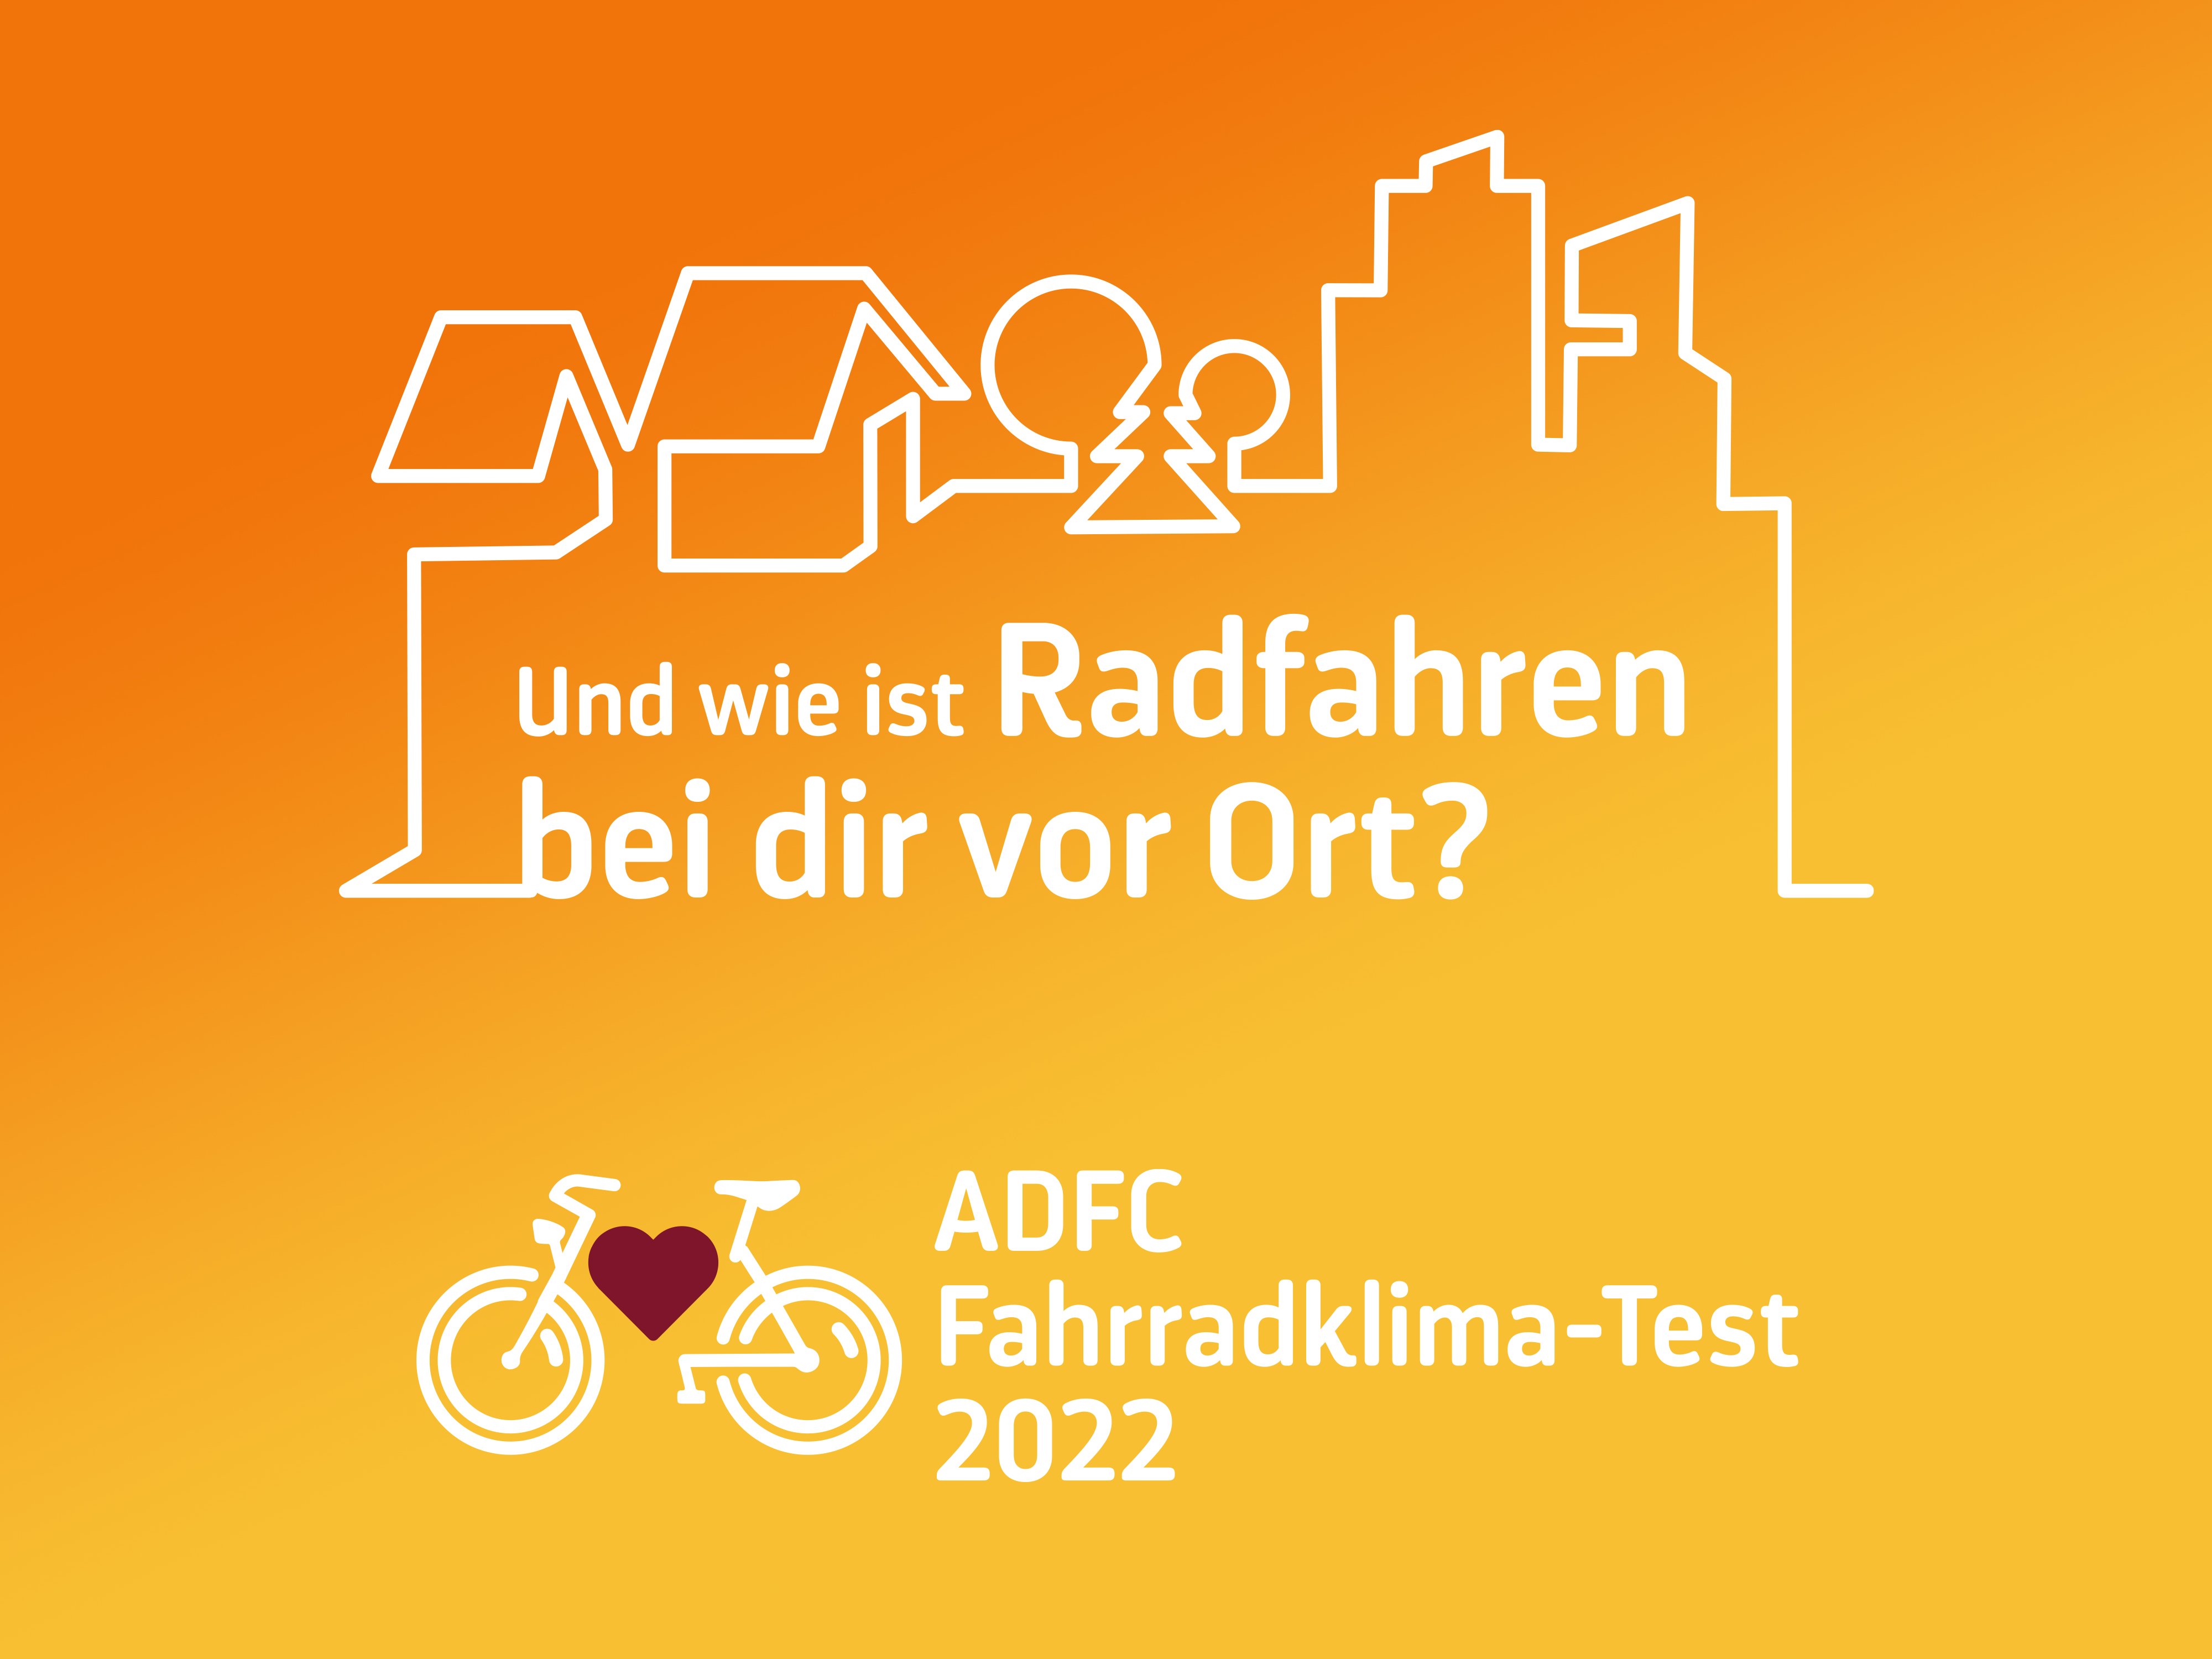 Und wie ist das Radfahren bei dir vor Ort? ADFC Fahrradklima-Test 2022